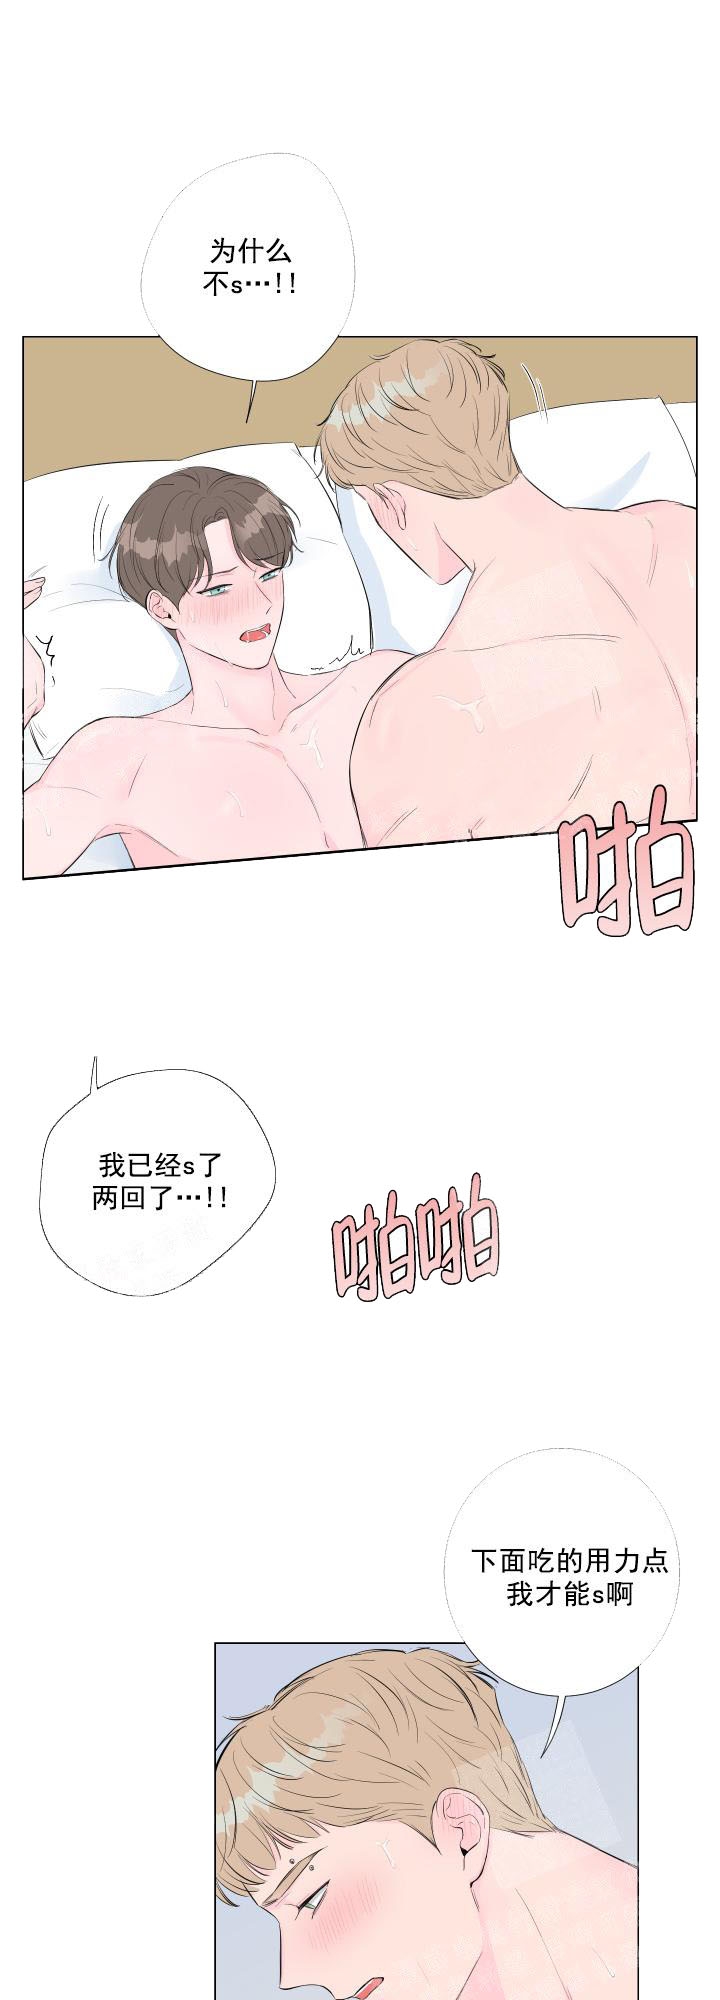 韩国污漫画 愛情與激情 第11话 9